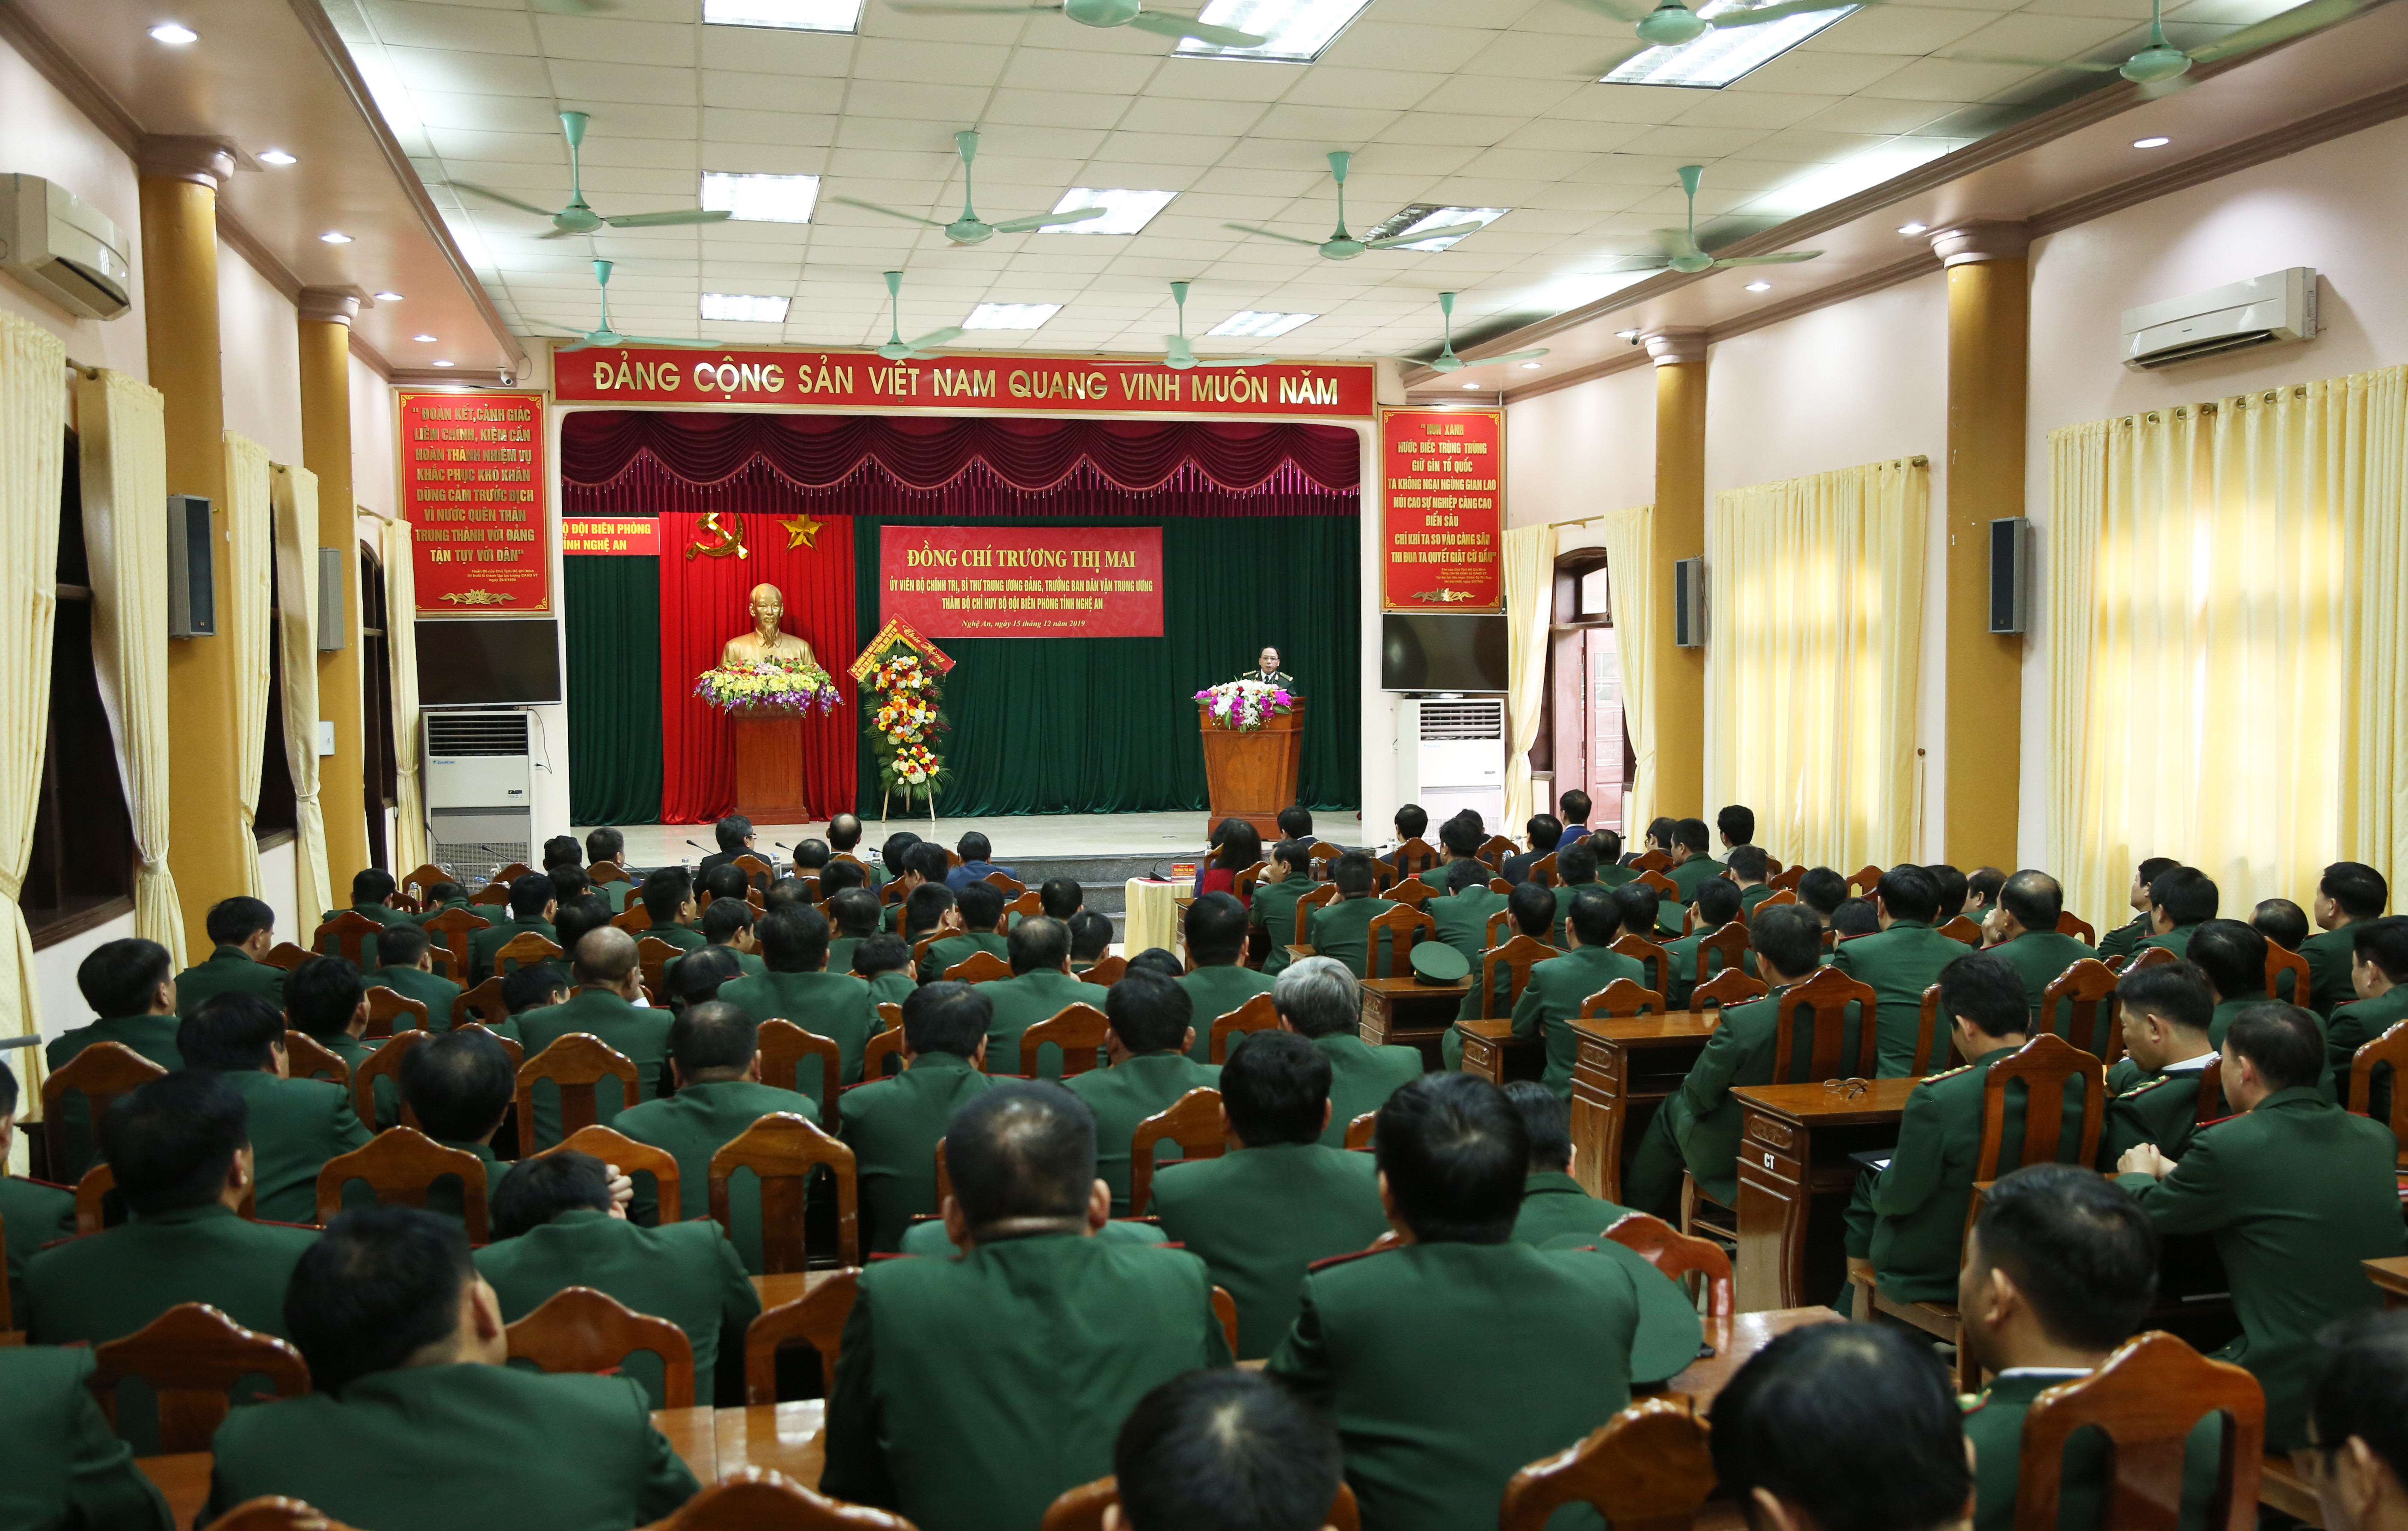 Quang cảnh buổi thăm, làm việc của đồng chí Trương Thị Mai tại Bộ Chỉ huy BĐBP tỉnh Nghệ An. Ảnh: Đào Tuấn  